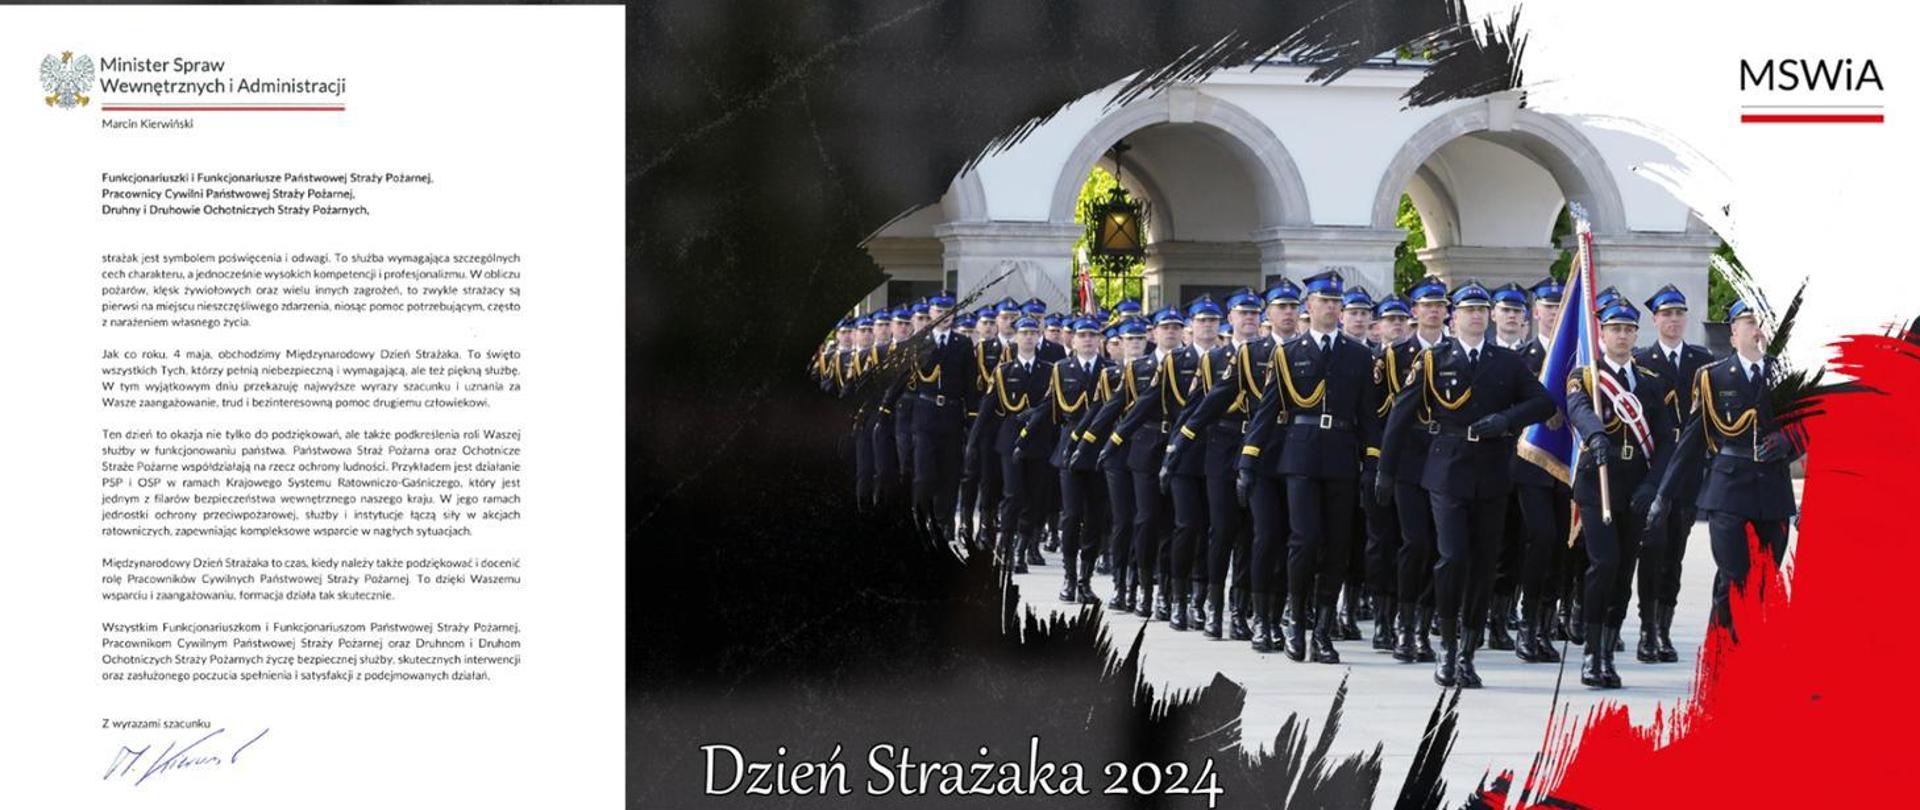 Życzenia Ministra Spraw Wewnętrznych i Administracji z okazji Dnia Strażaka z fotografią strażaków maszerujących ze sztandarem